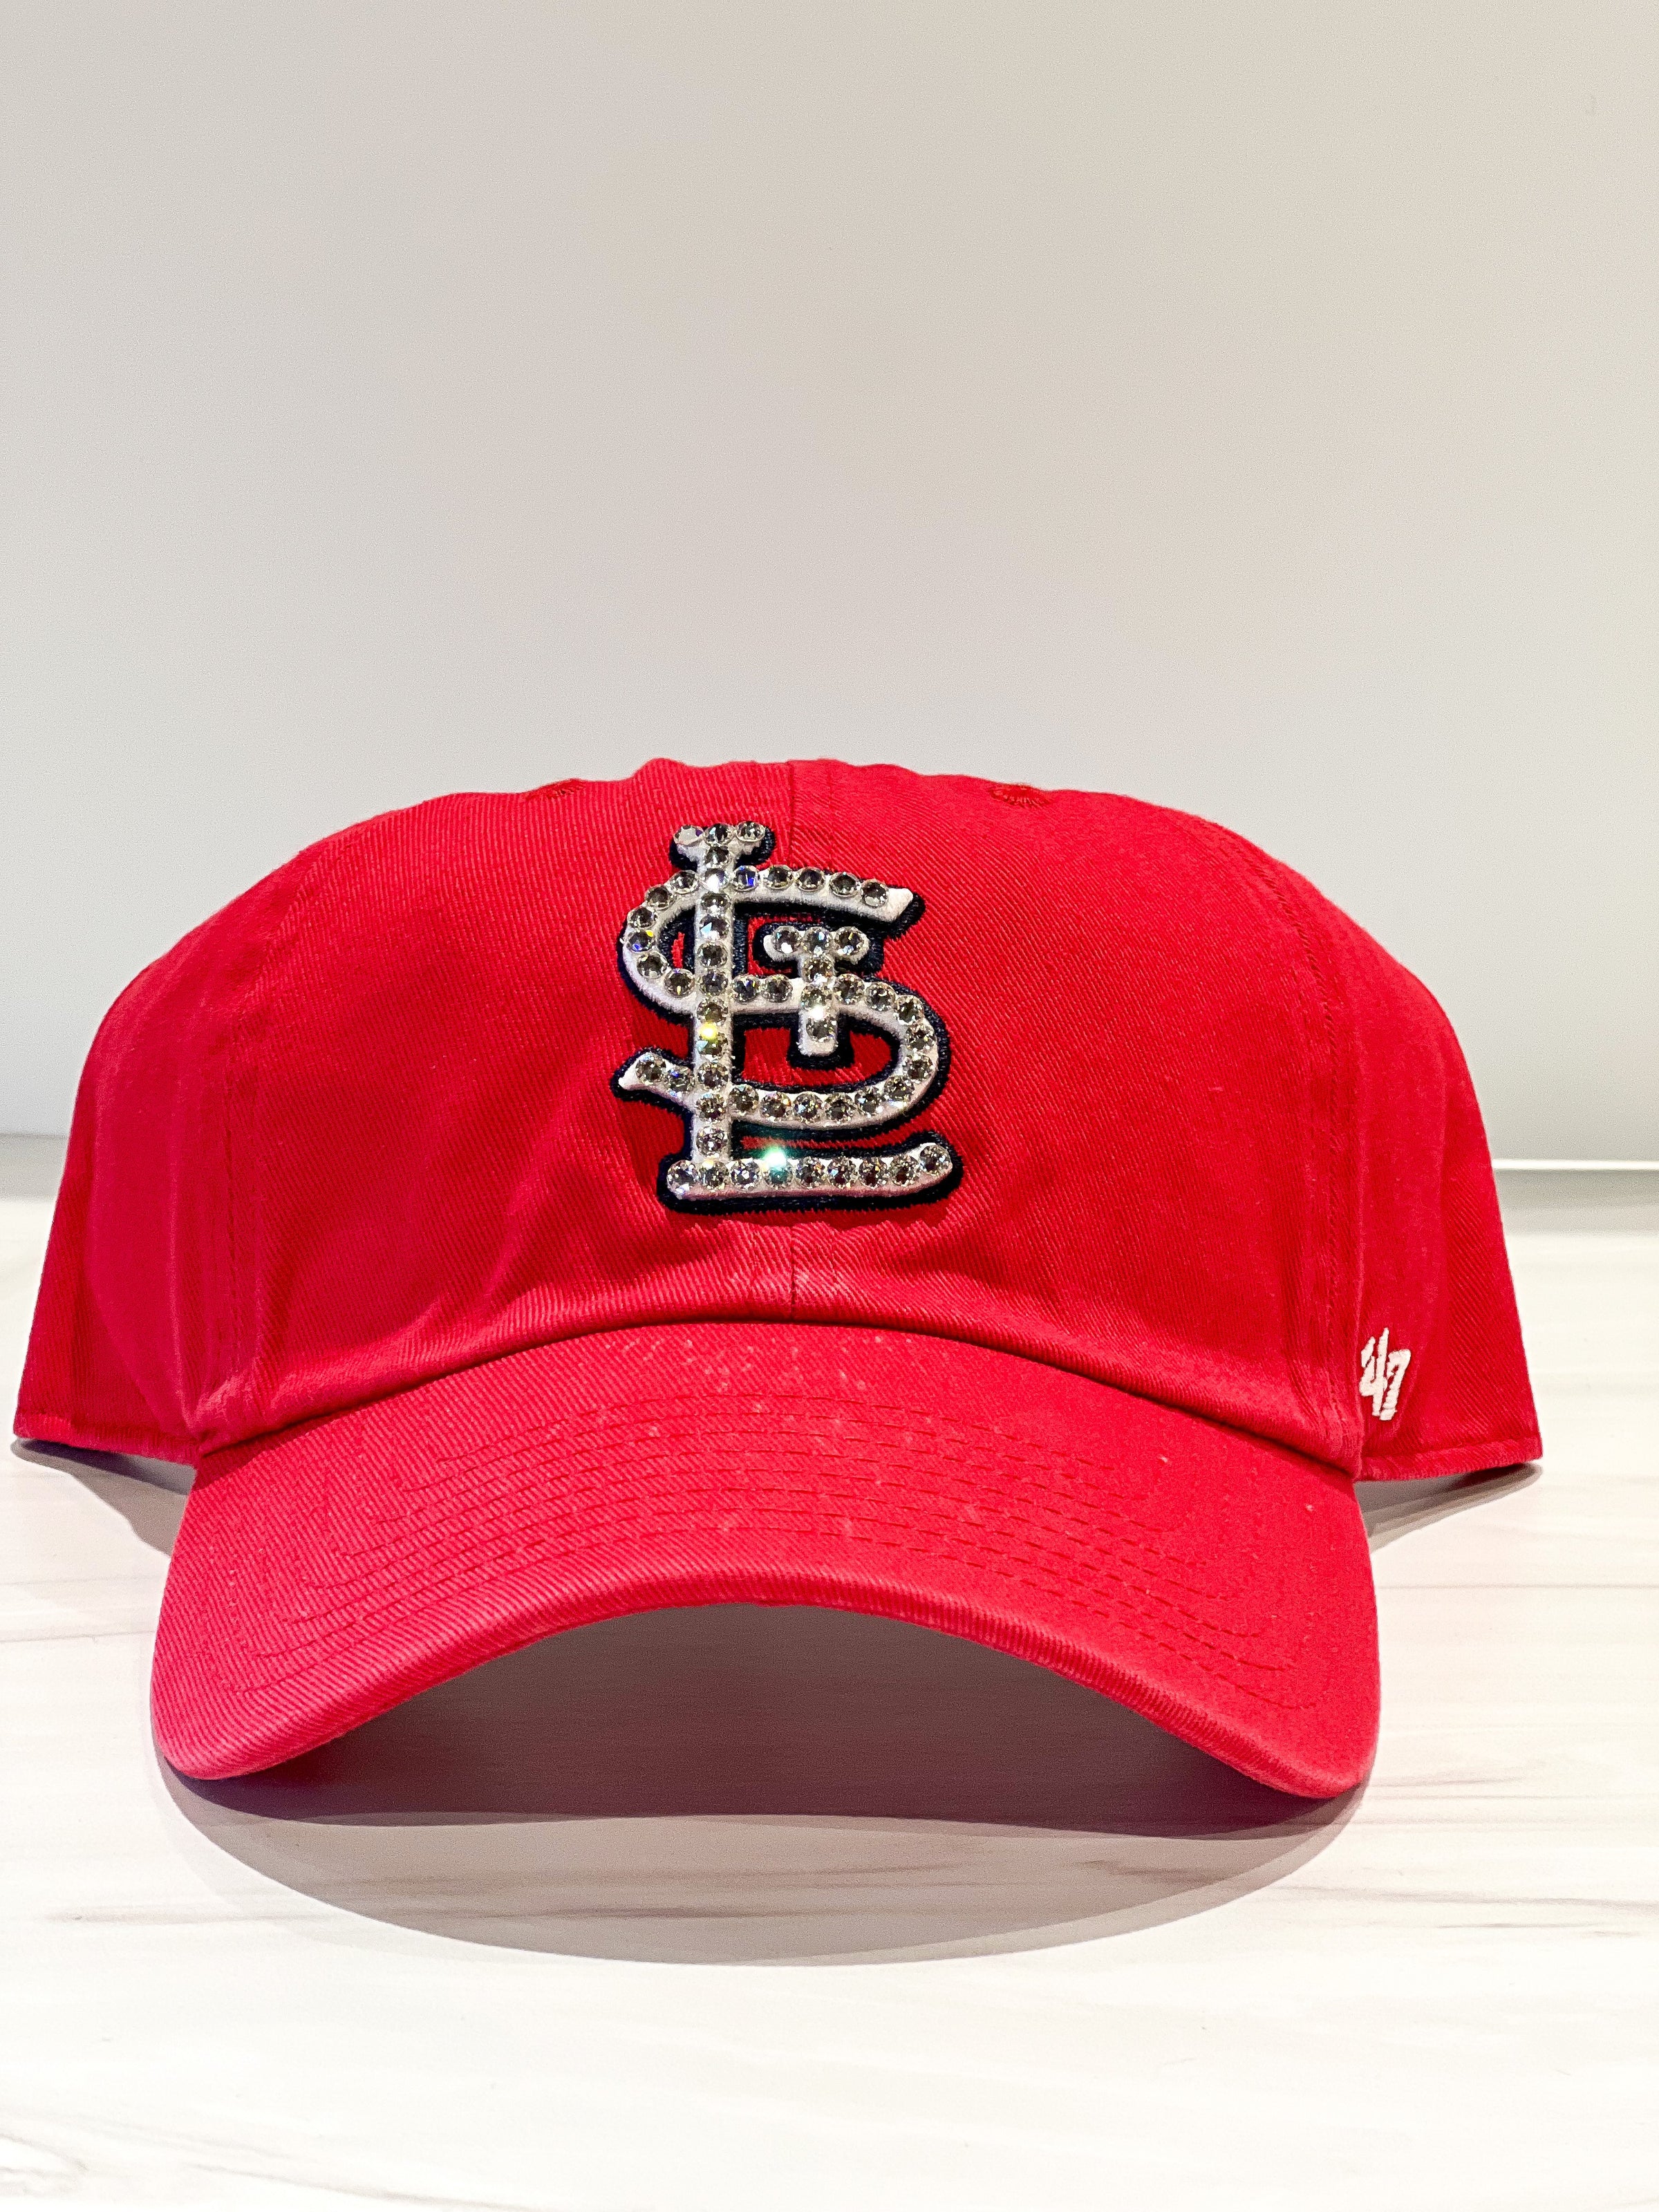 st louis cardinals hats